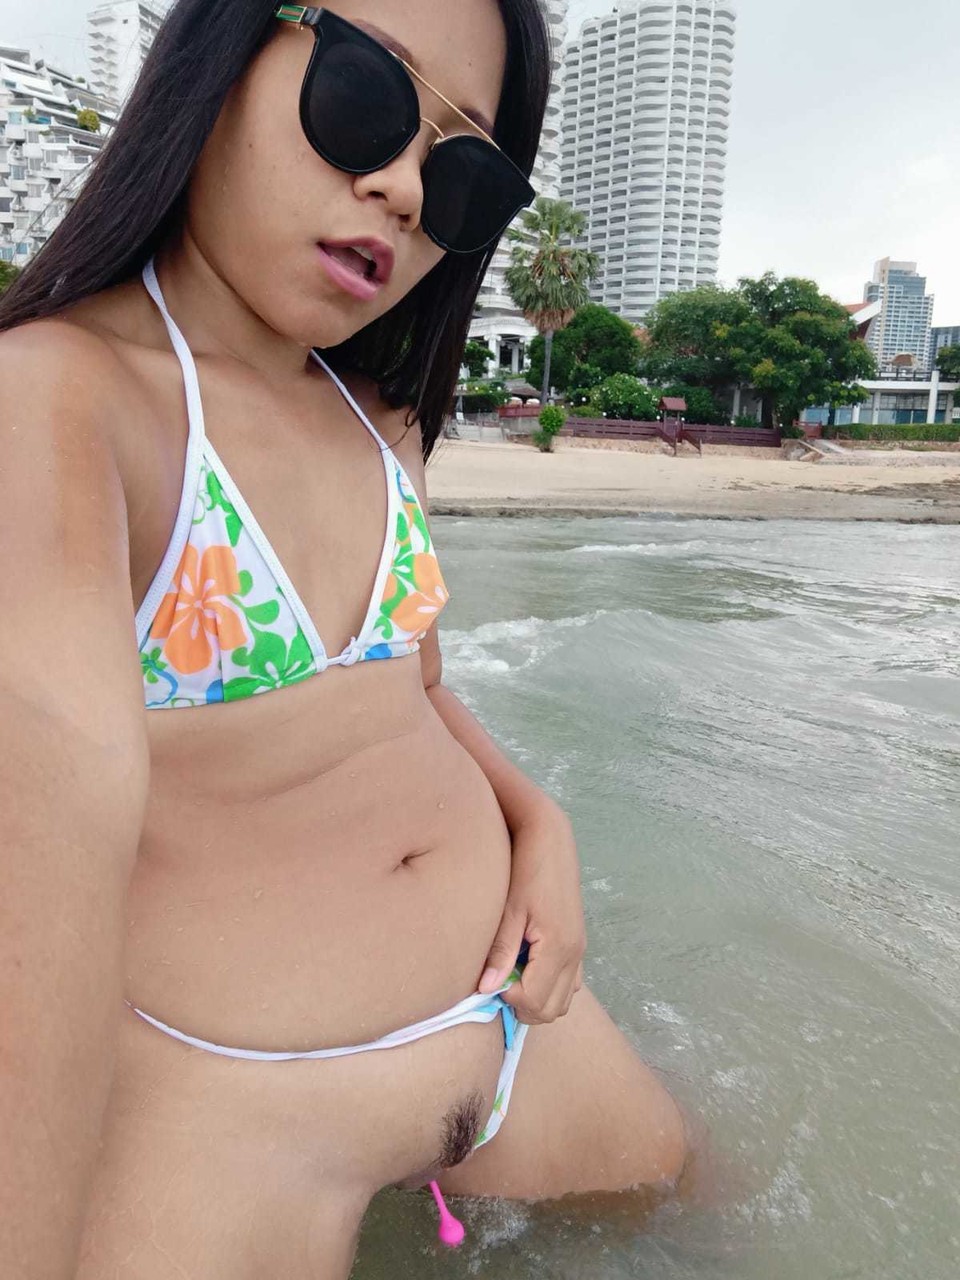 Gorgeous Asian amateur Kiki Asia shows her hot ass in a bikini at the beach foto porno #425545190 | TukTuk Thailand Pics, Kiki Asia, Thai, porno mobile